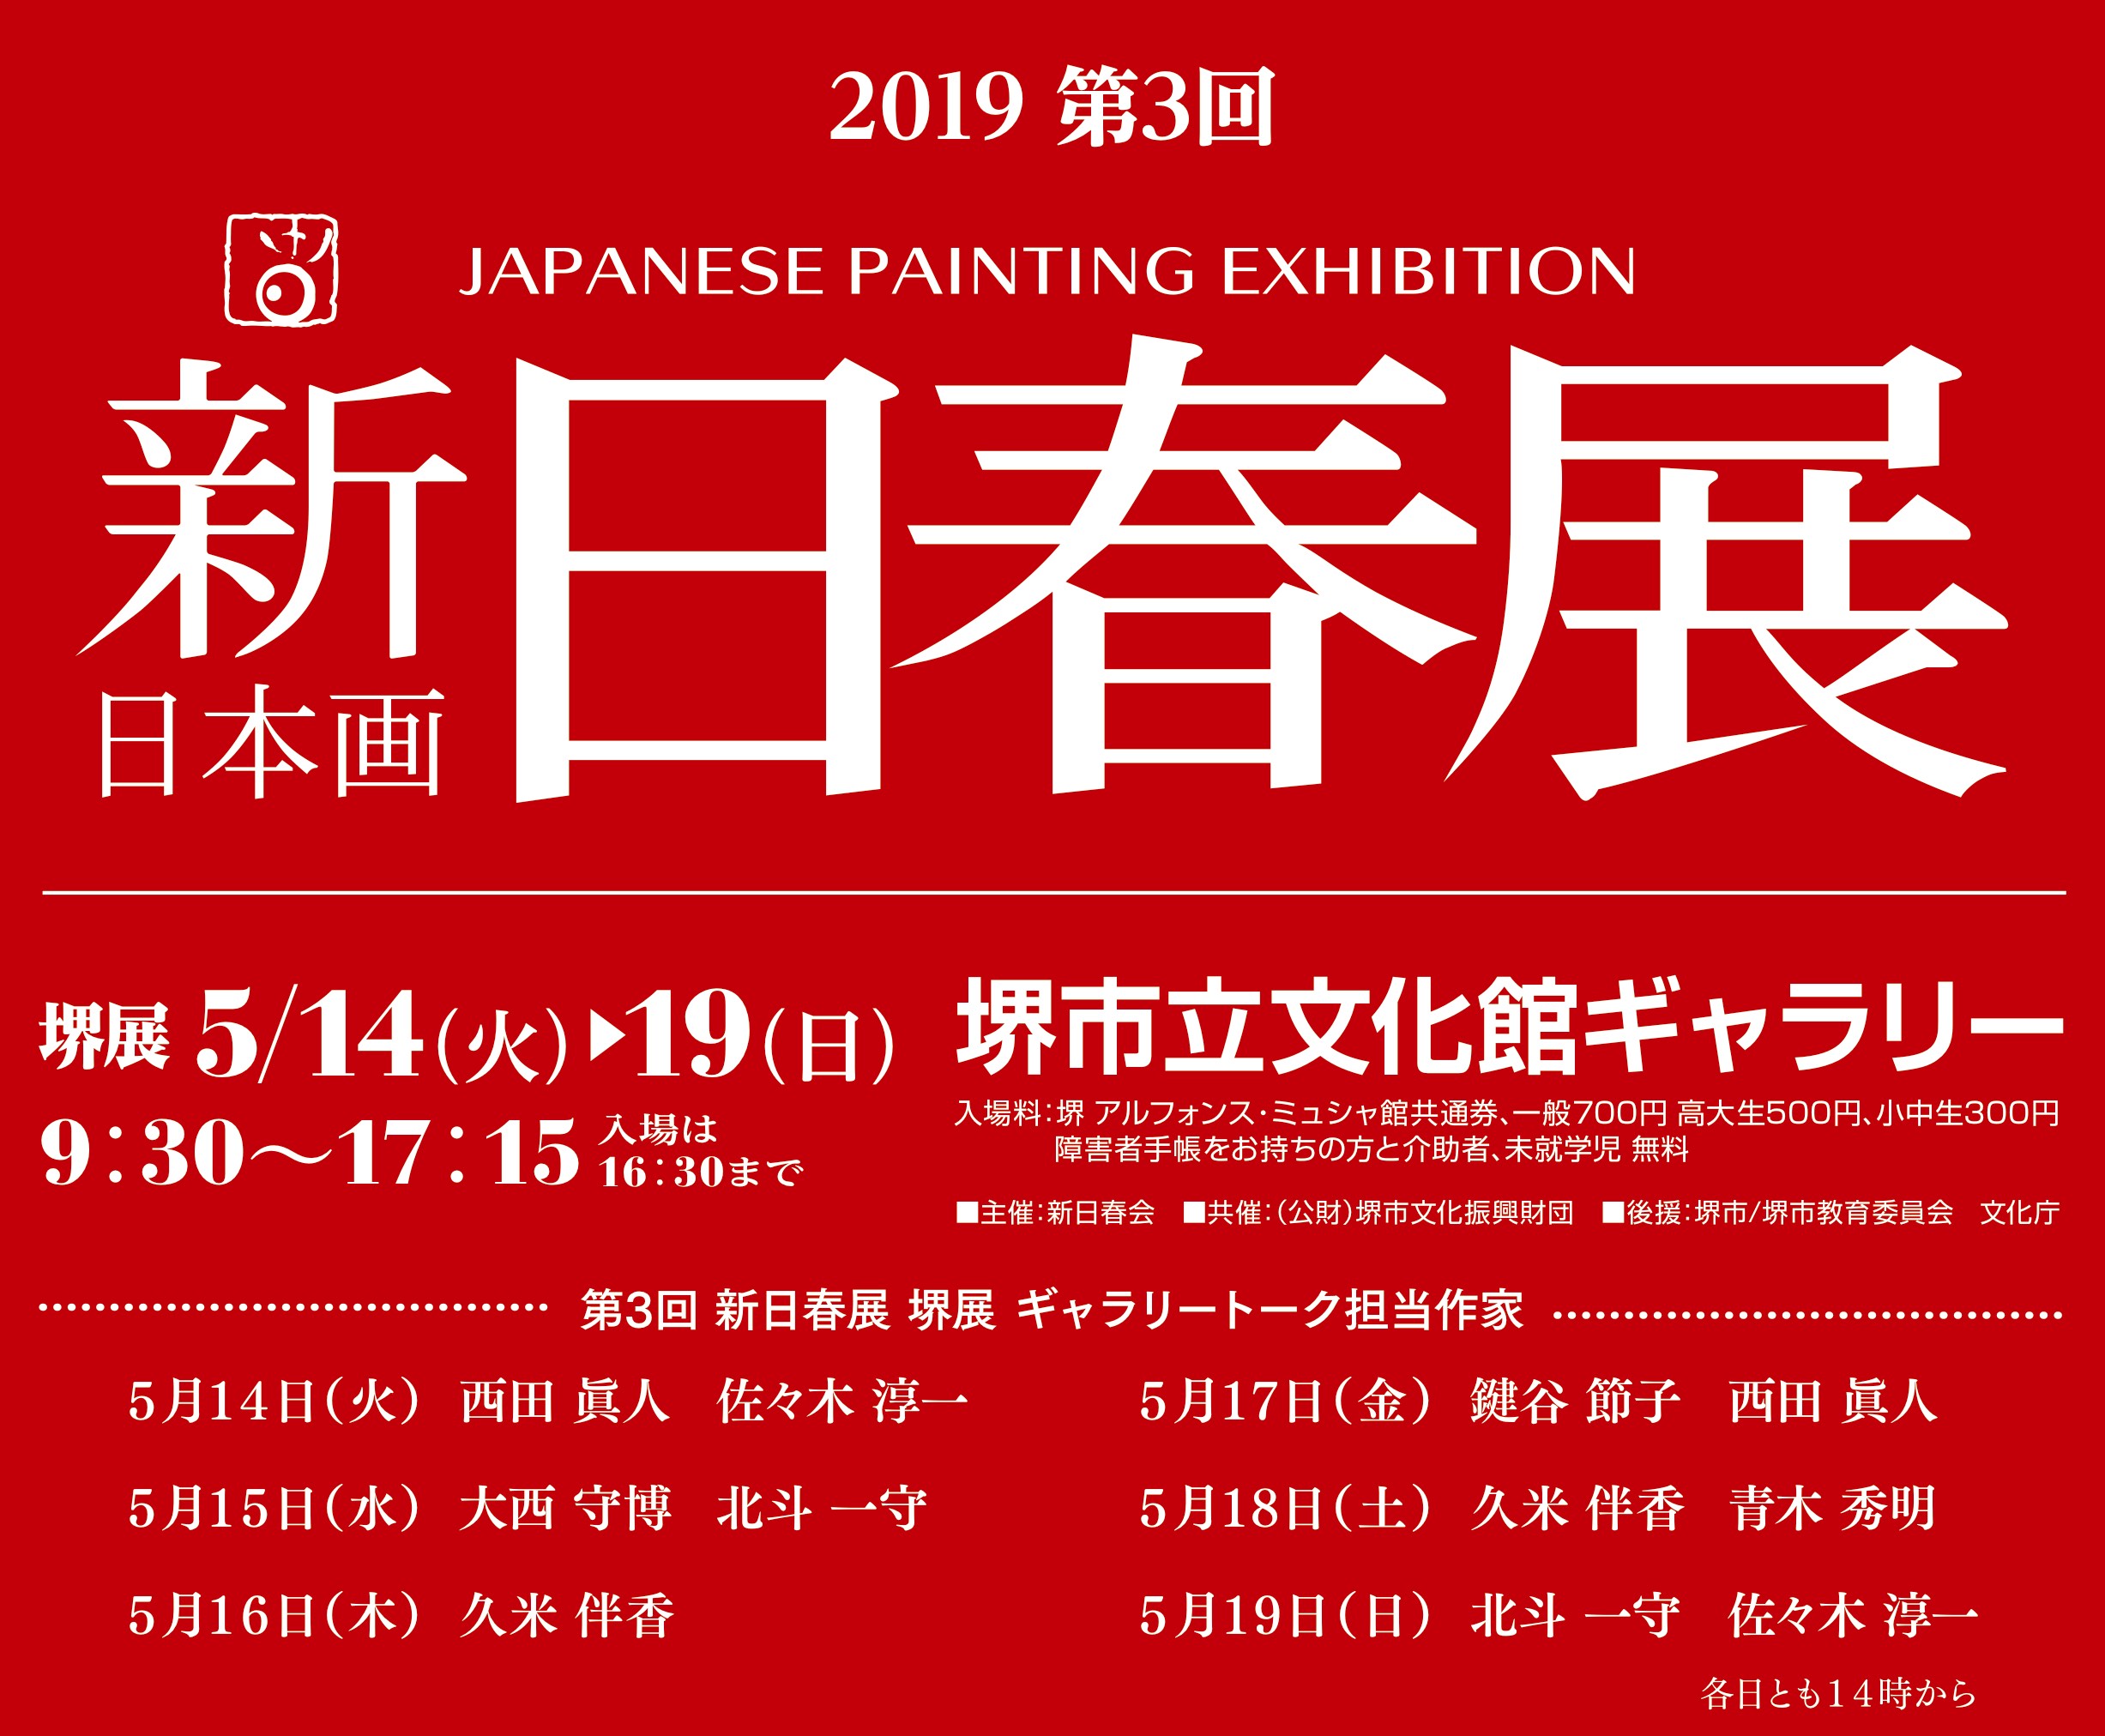 書道家・紫舟による春画展、東京で初披露 | ニュース | アイエム[インターネットミュージアム]